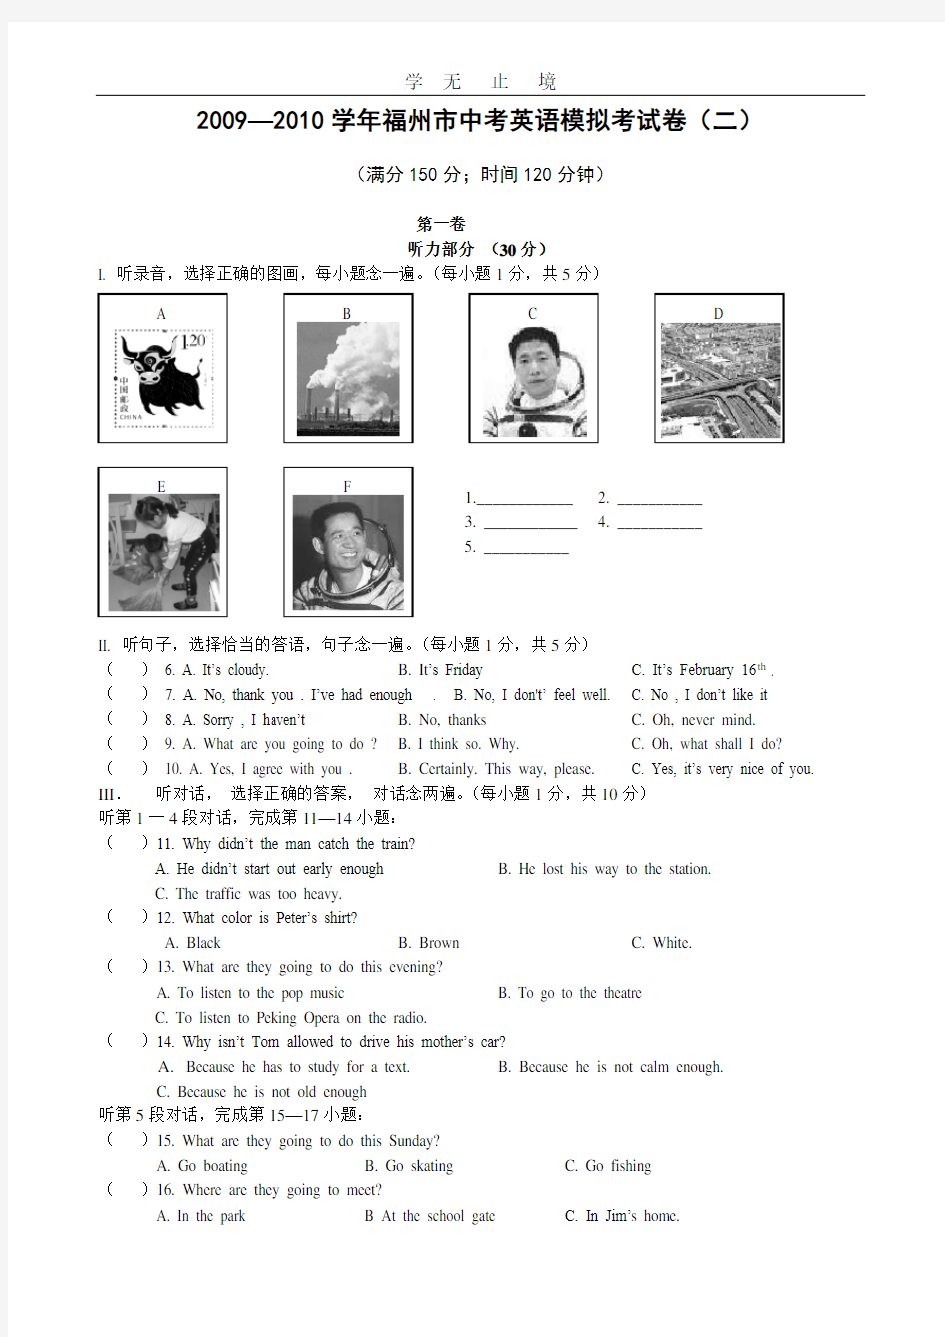 福州市中考英语模拟试卷(二).pdf